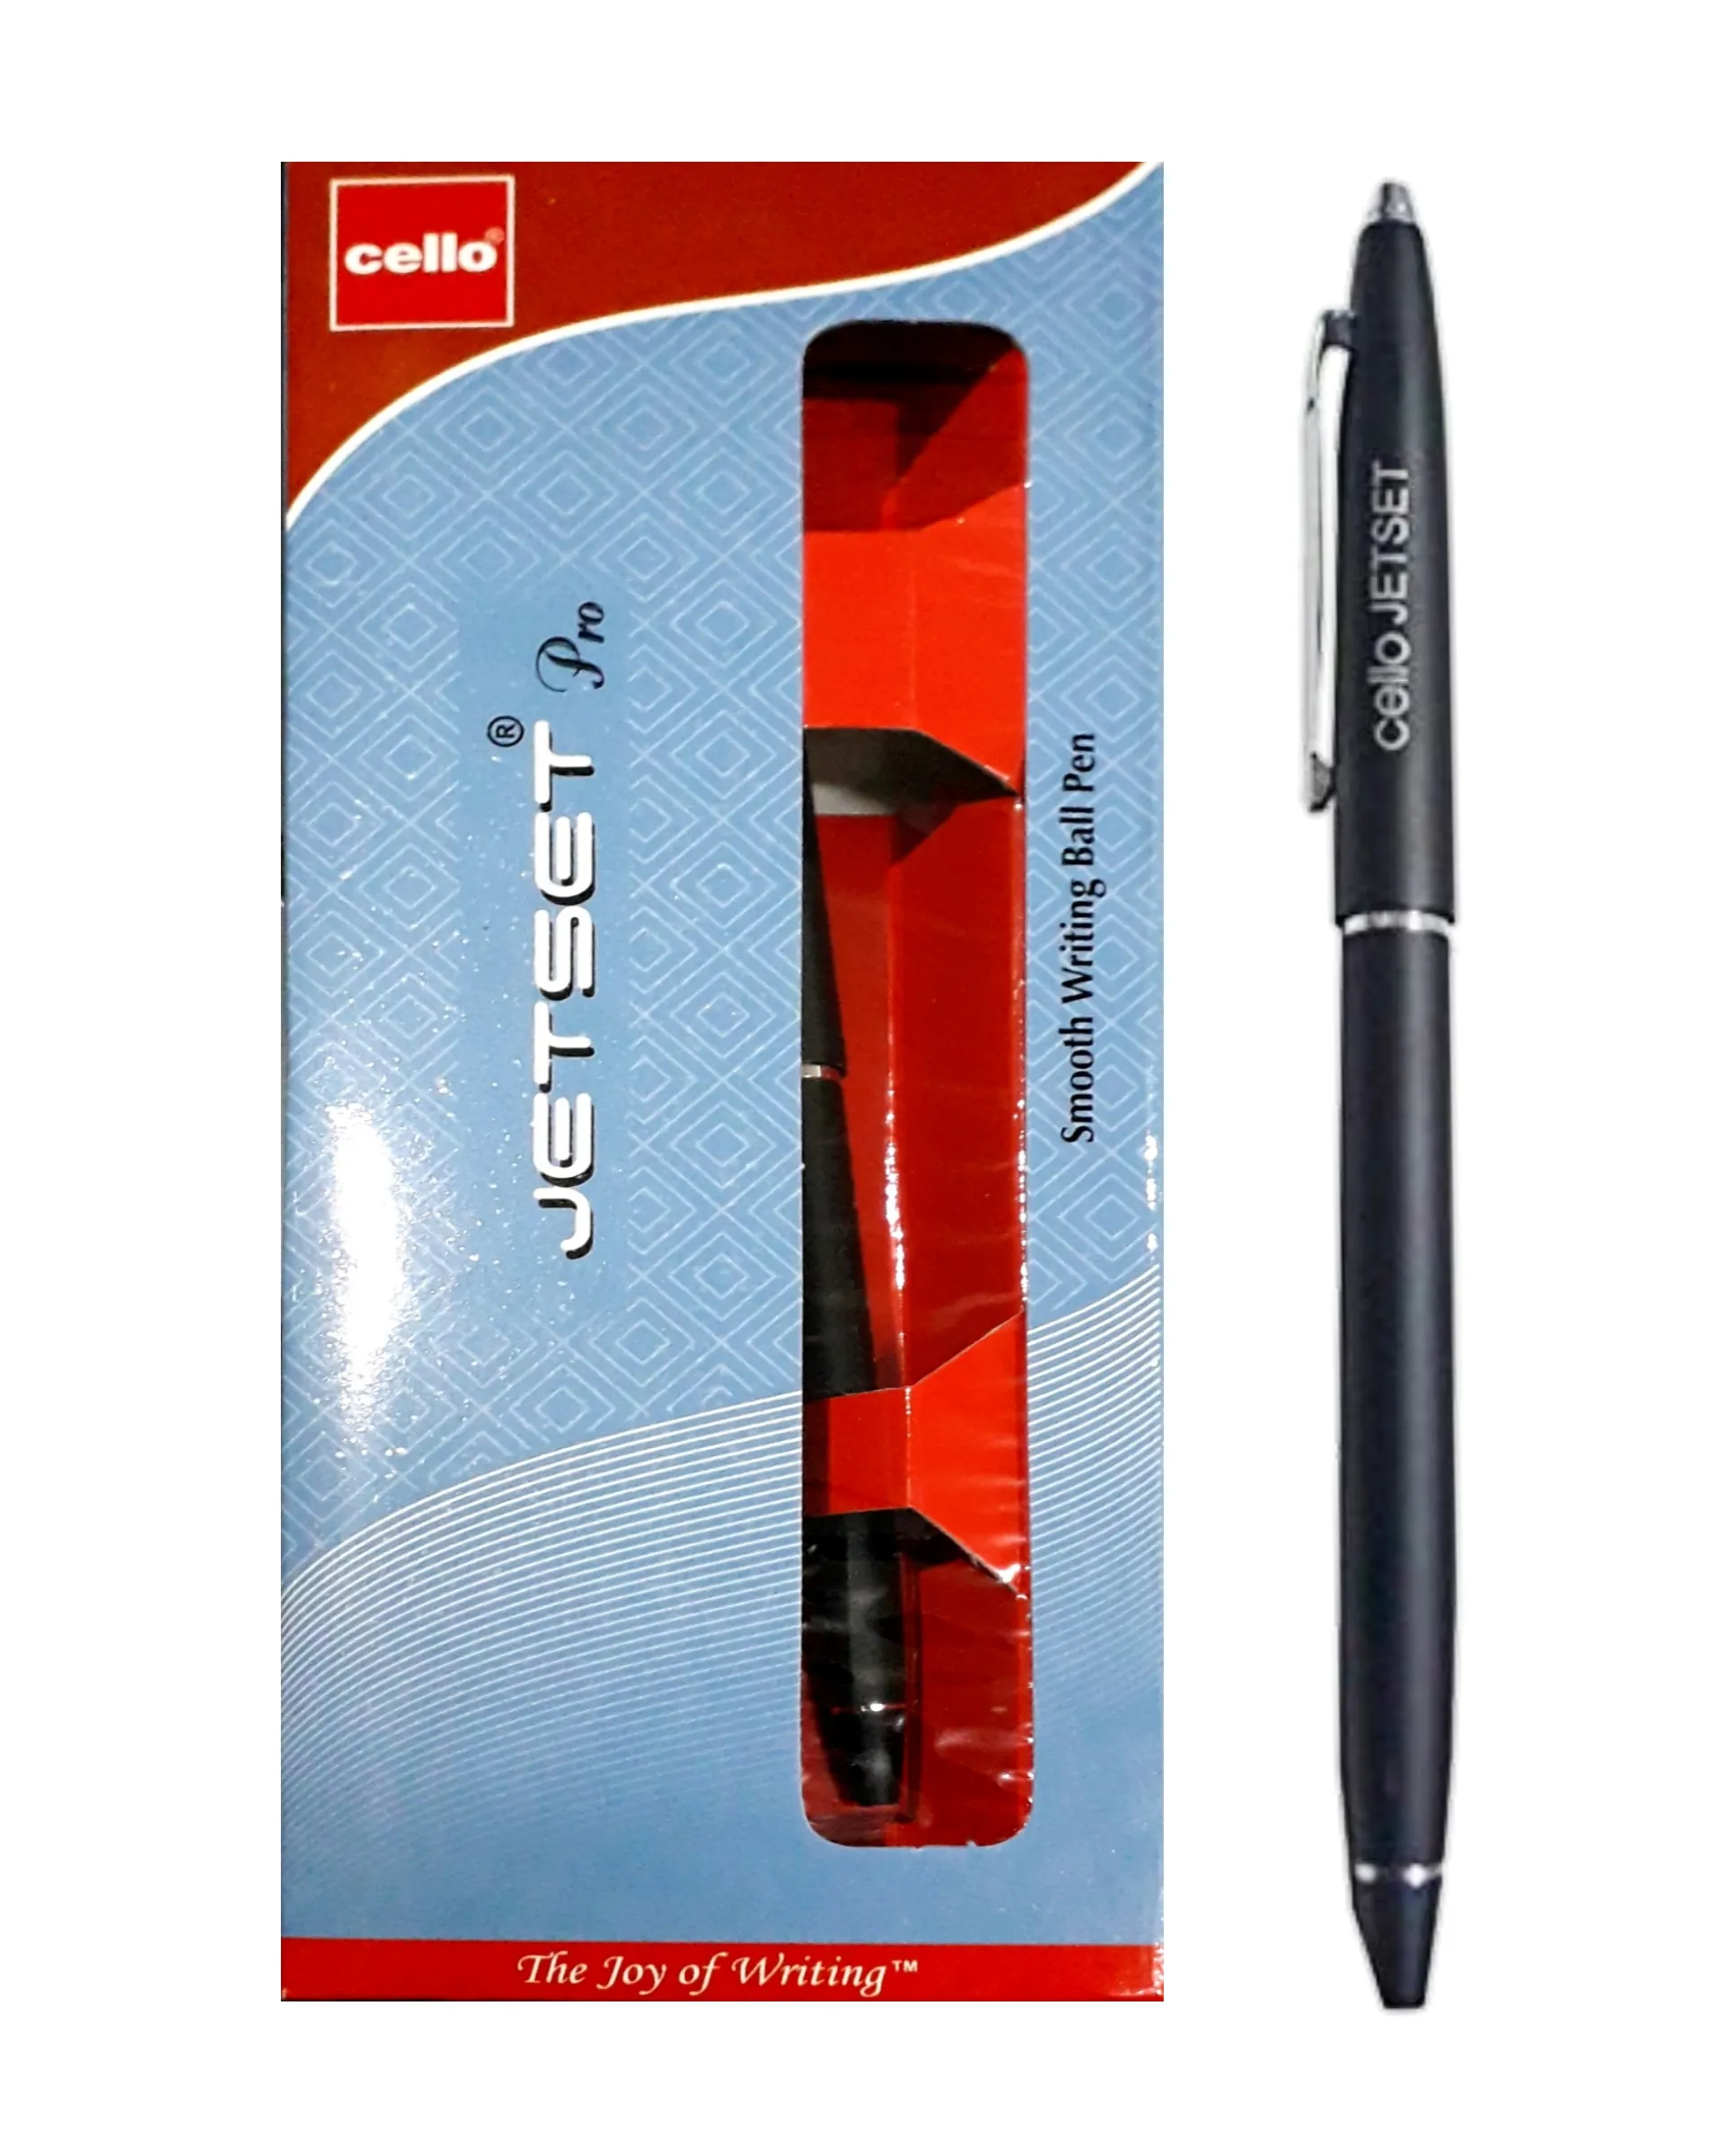 Cello Jet Set Pro Ball Pen Smooth Writing Ball Pen Retractable Pen Pack of 1